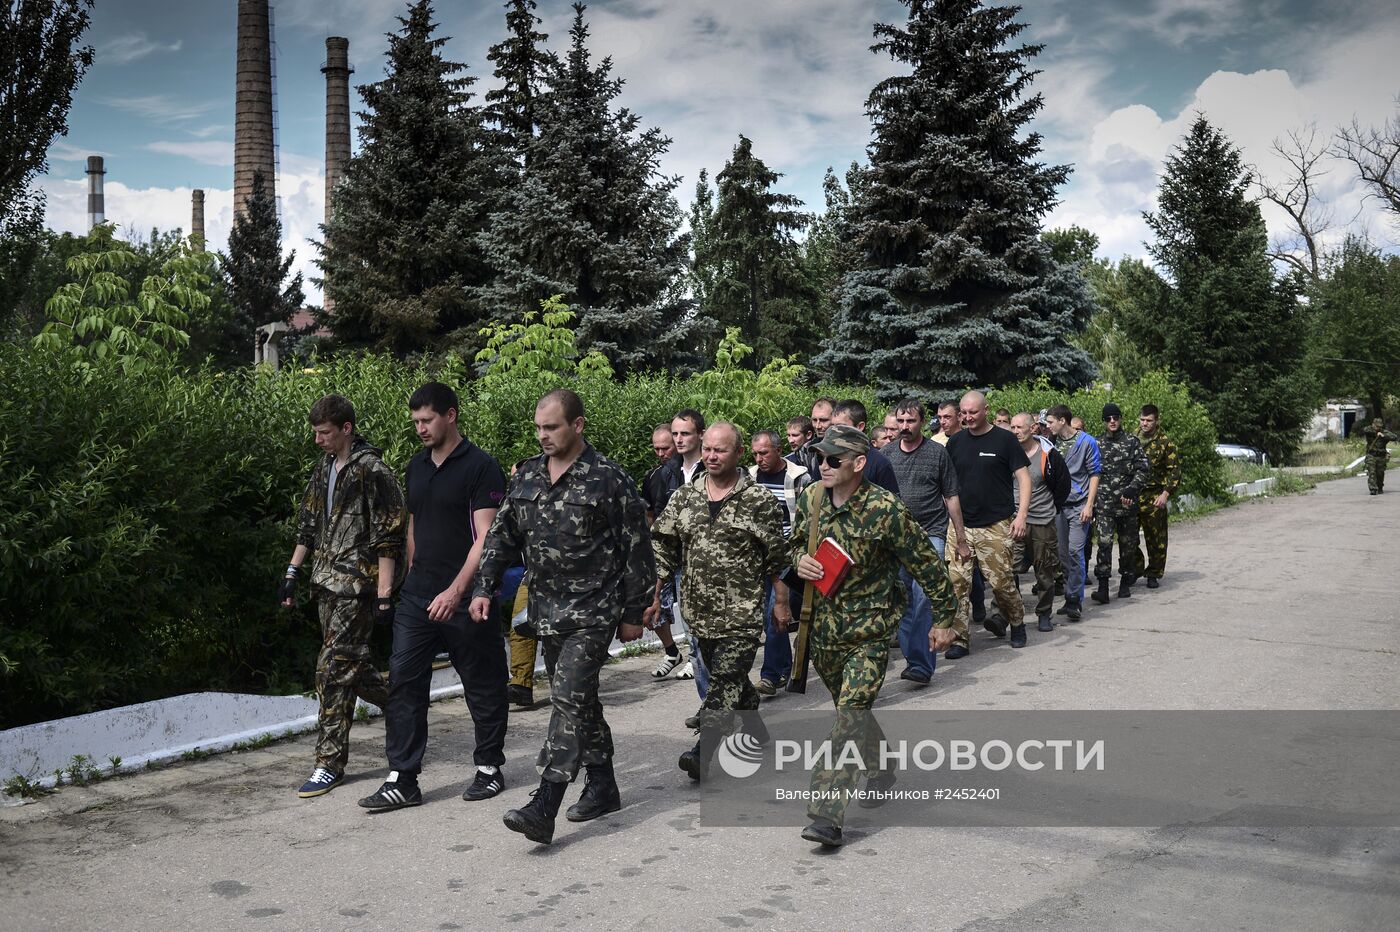 Ситуация в Луганской области Батальон "Призрак" народного ополчения Луганска